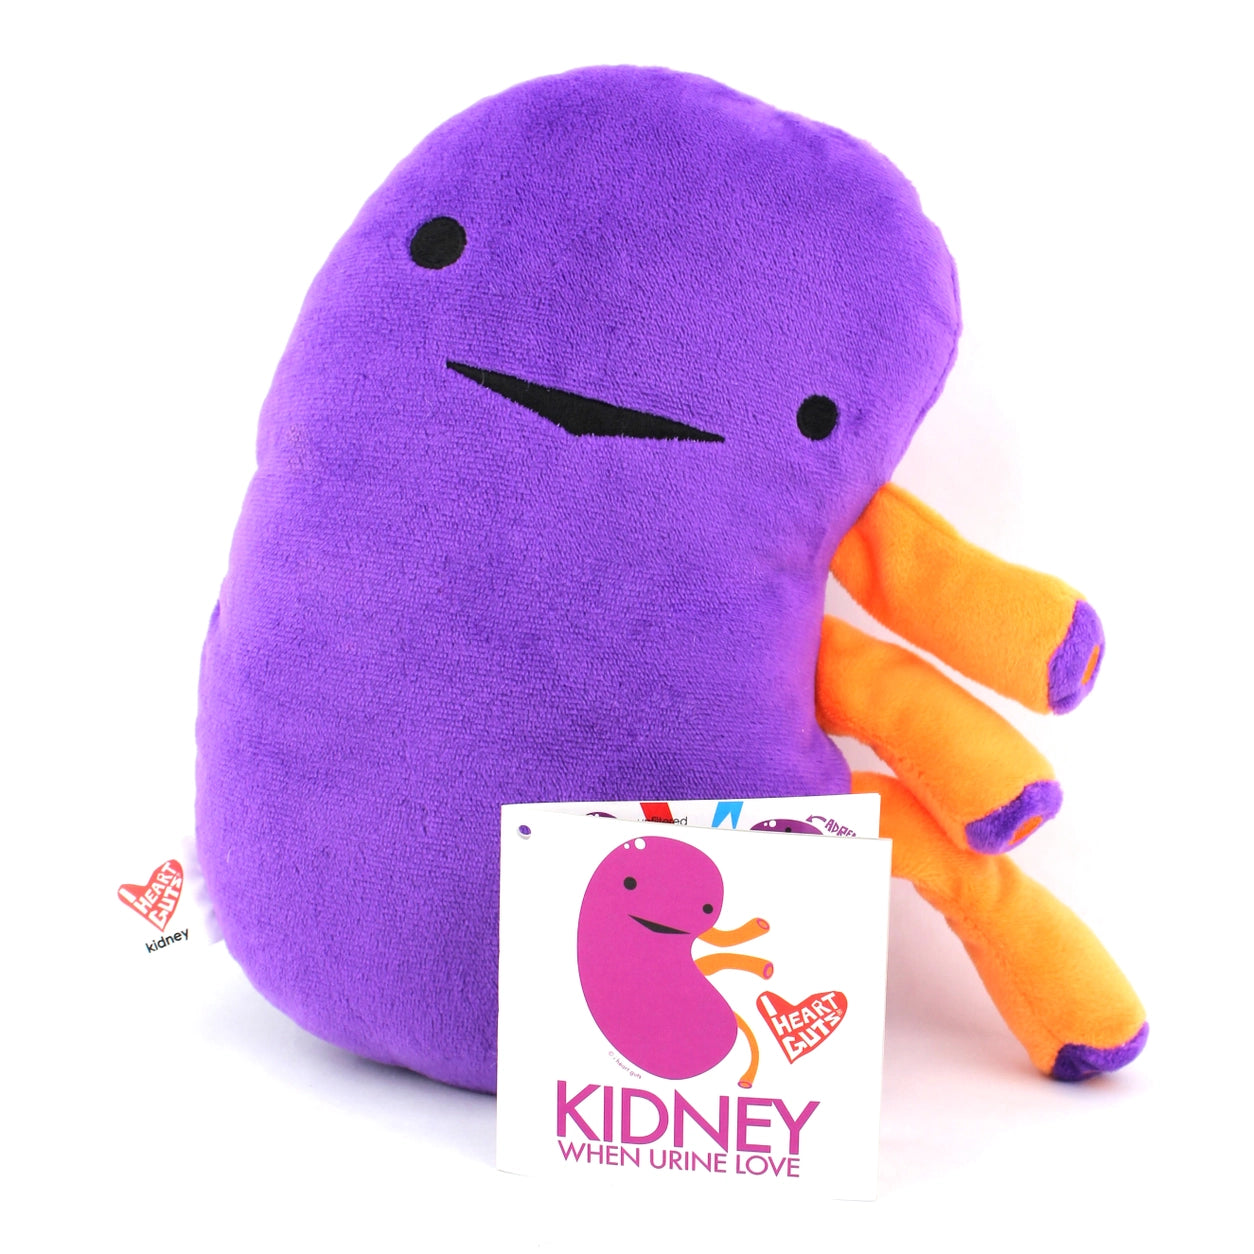 plushie kidney - When urine love